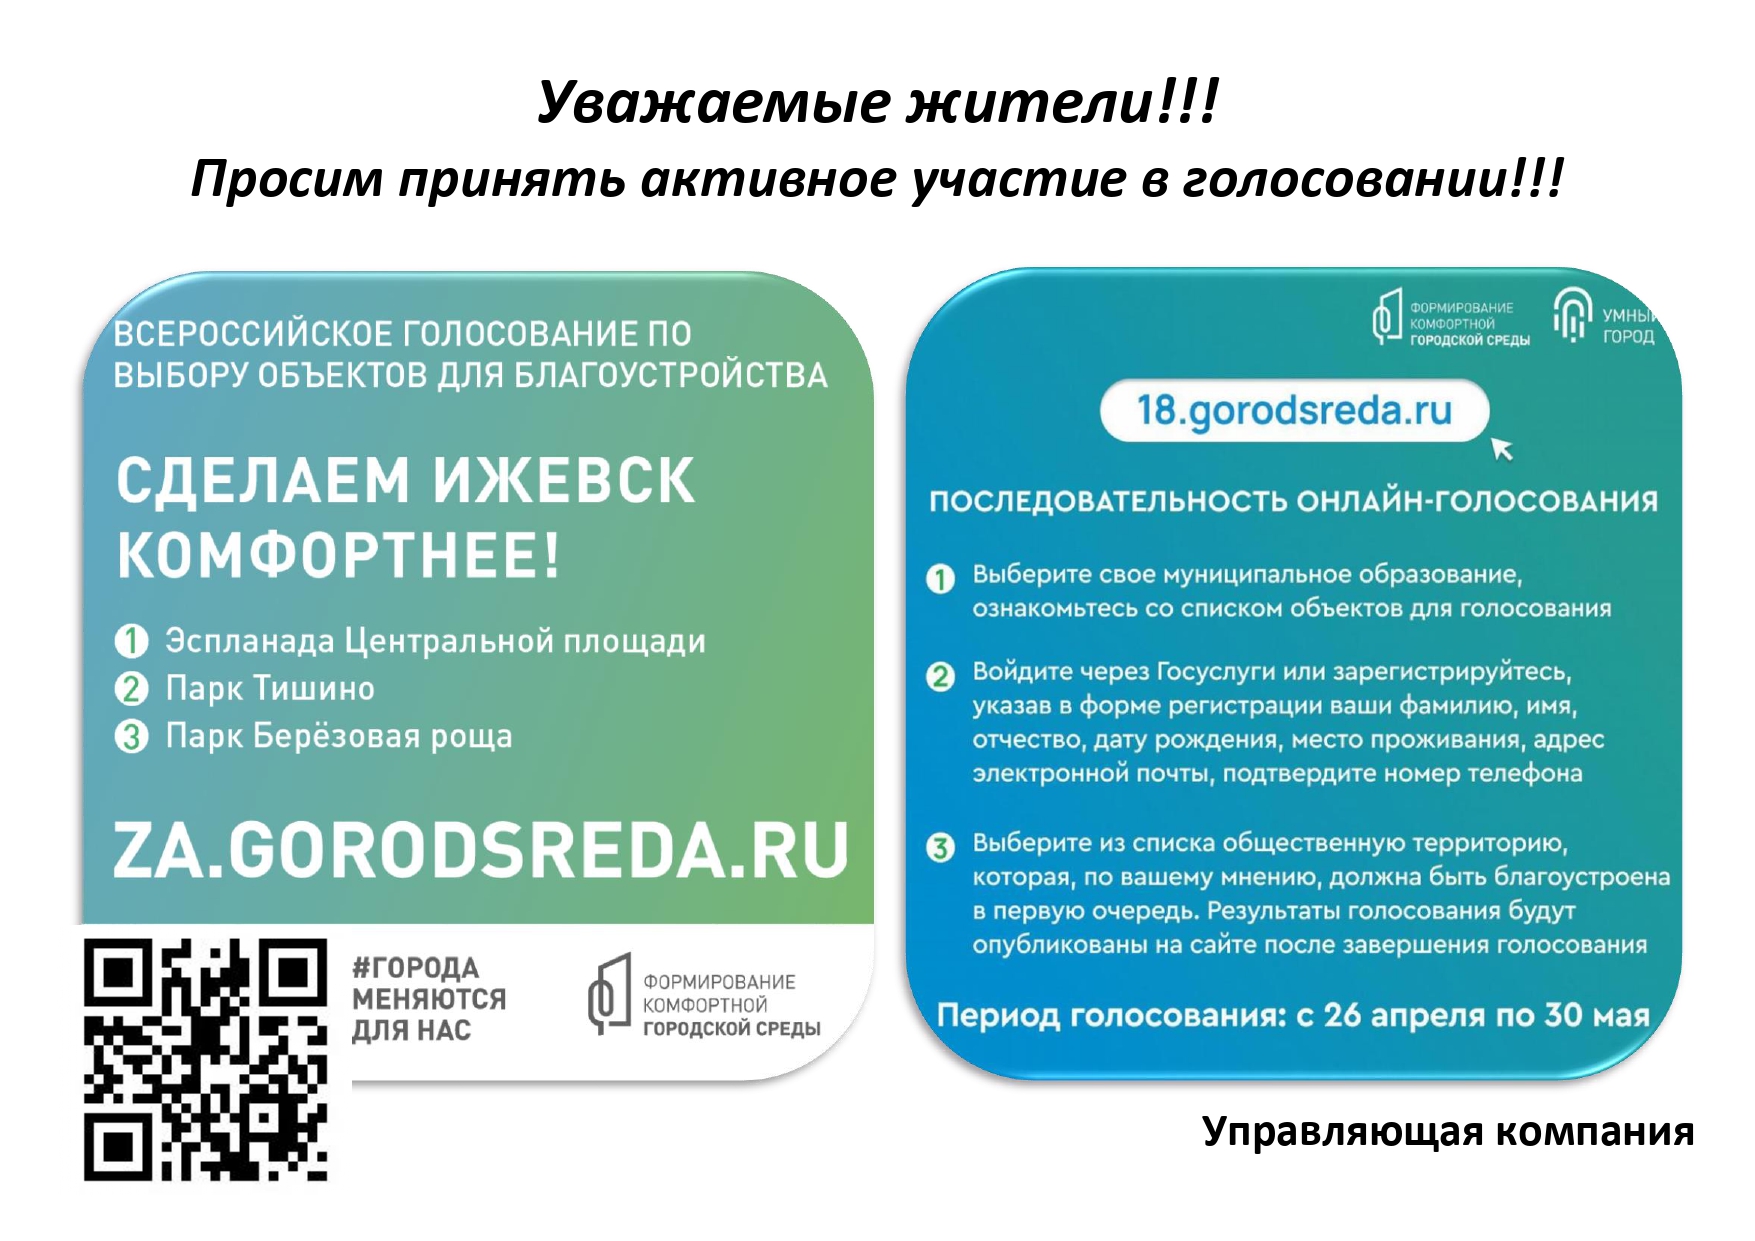 29 gorodsreda ru проголосовать. Примите участие в голосовании. 66 Городсреда ру проголосовать. 64городсреда.ру.